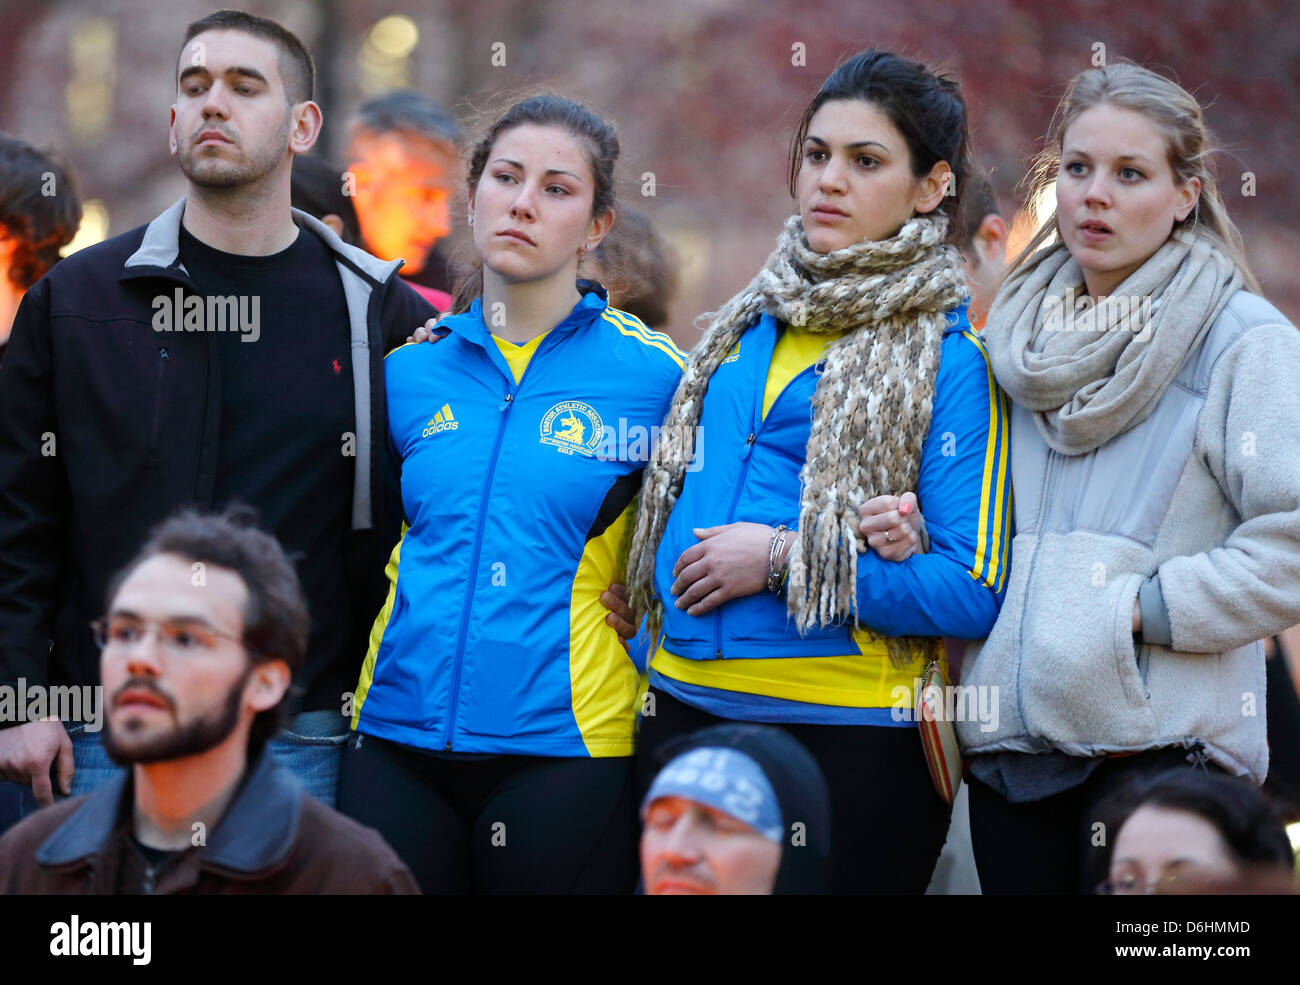 Vigilia con velas en el Boston Common tras las explosiones en la línea de meta de la Maratón de Boston Foto de stock